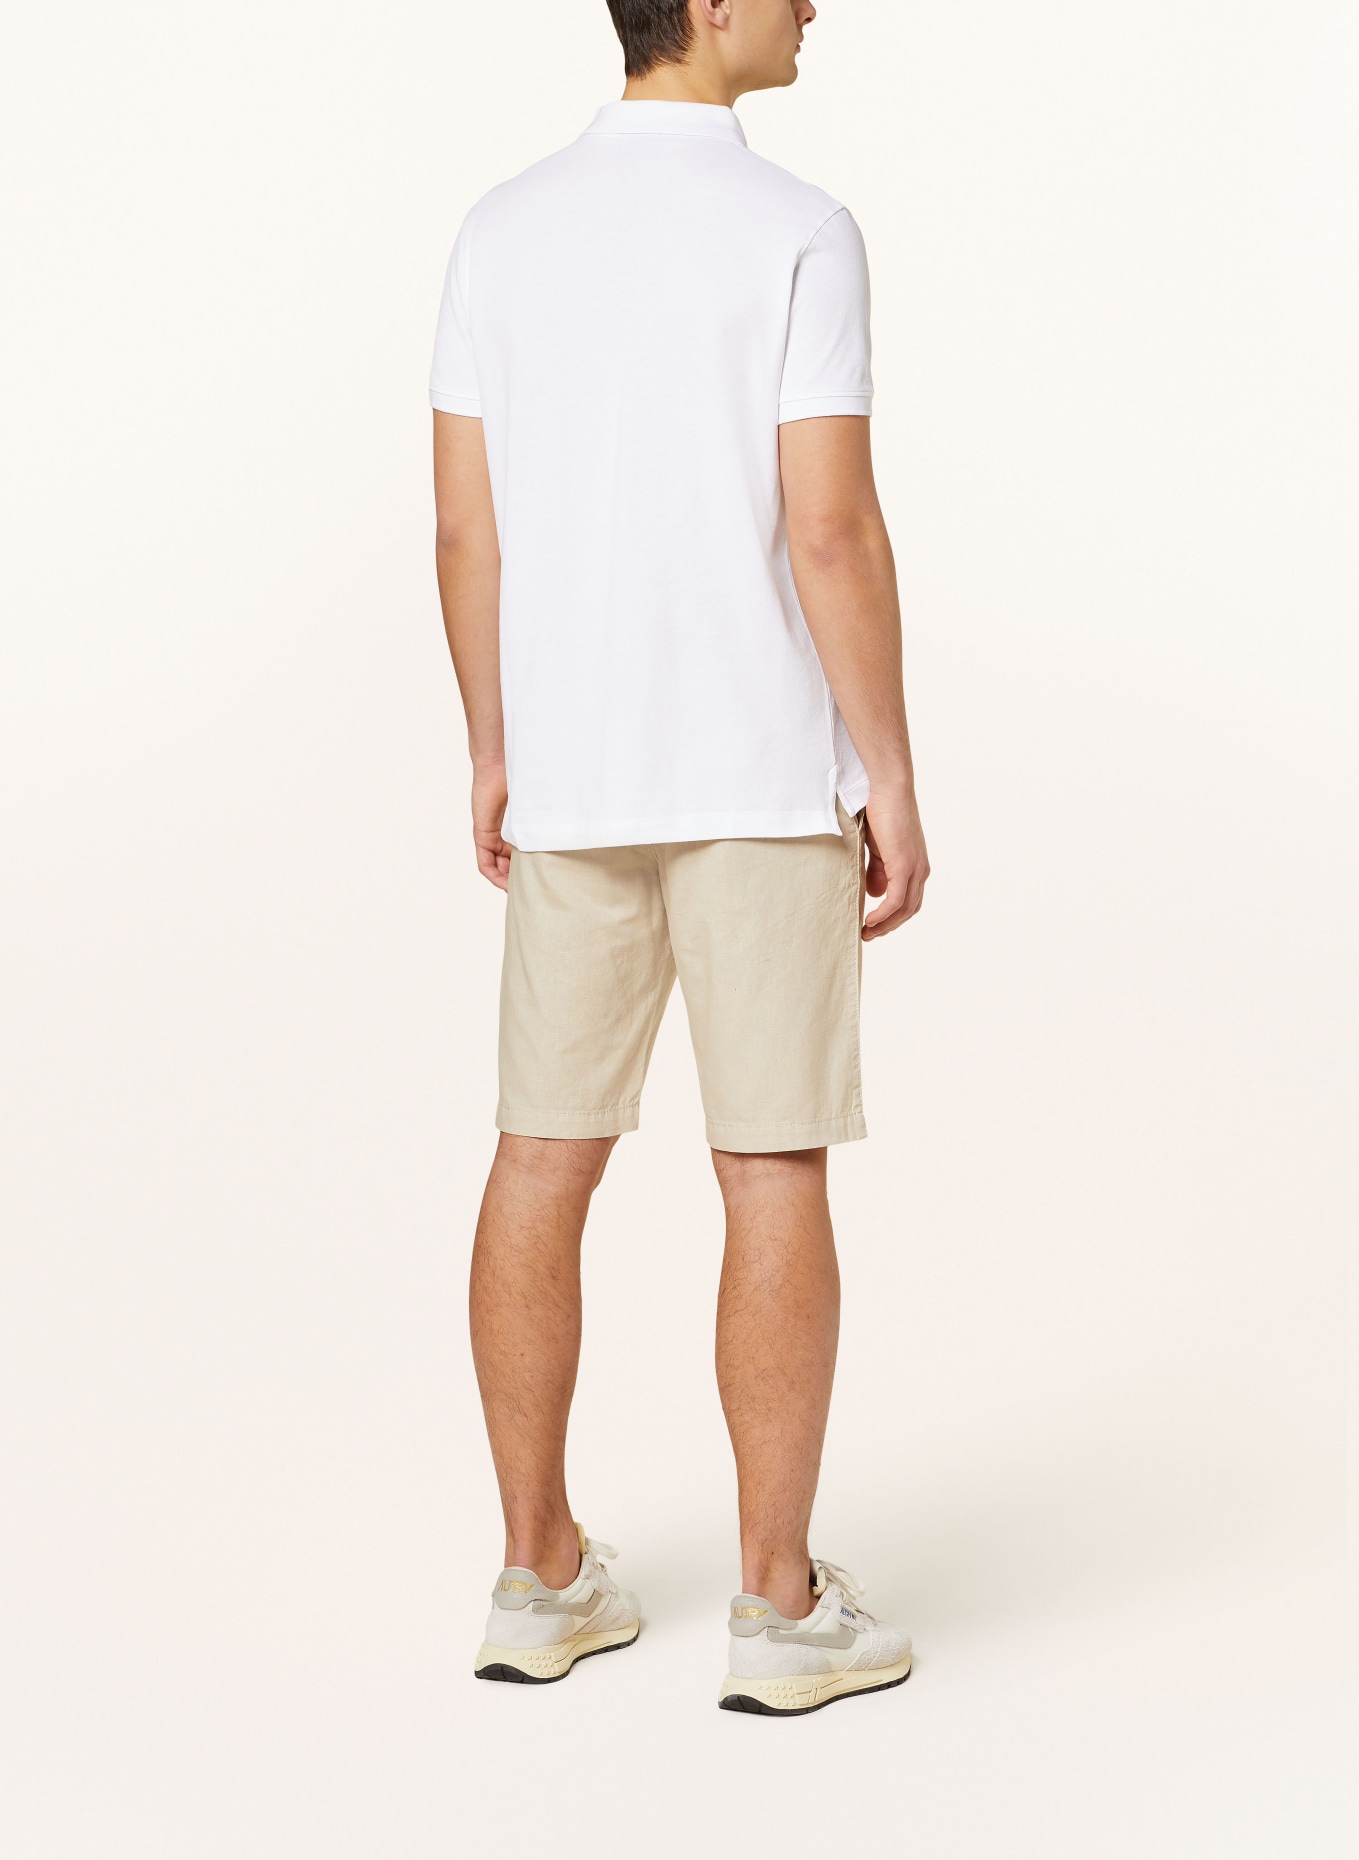 STROKESMAN'S Piqué polo shirt, Color: WHITE (Image 3)